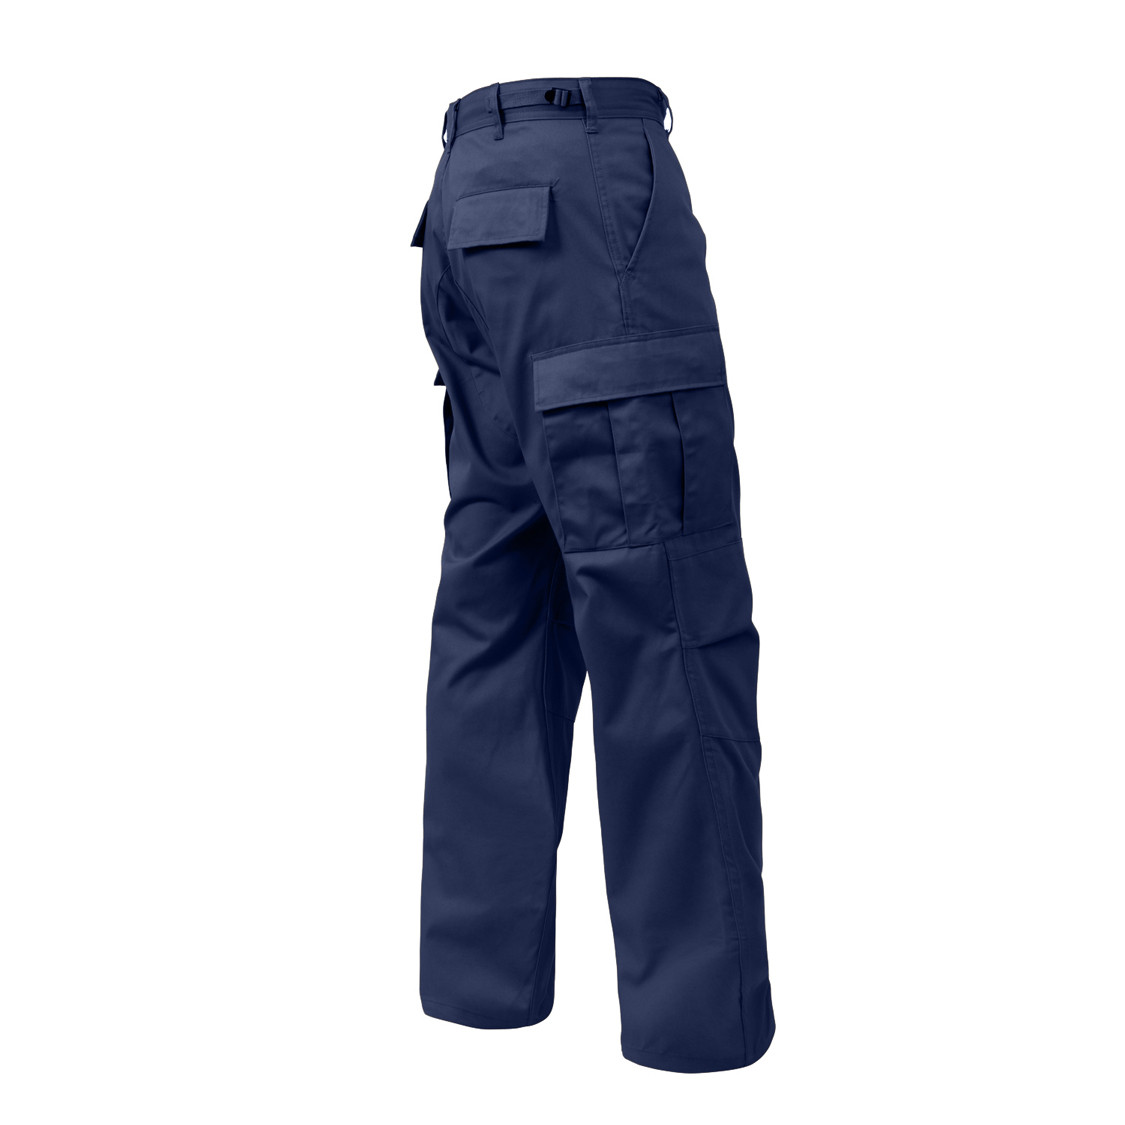 navy blue combat pants